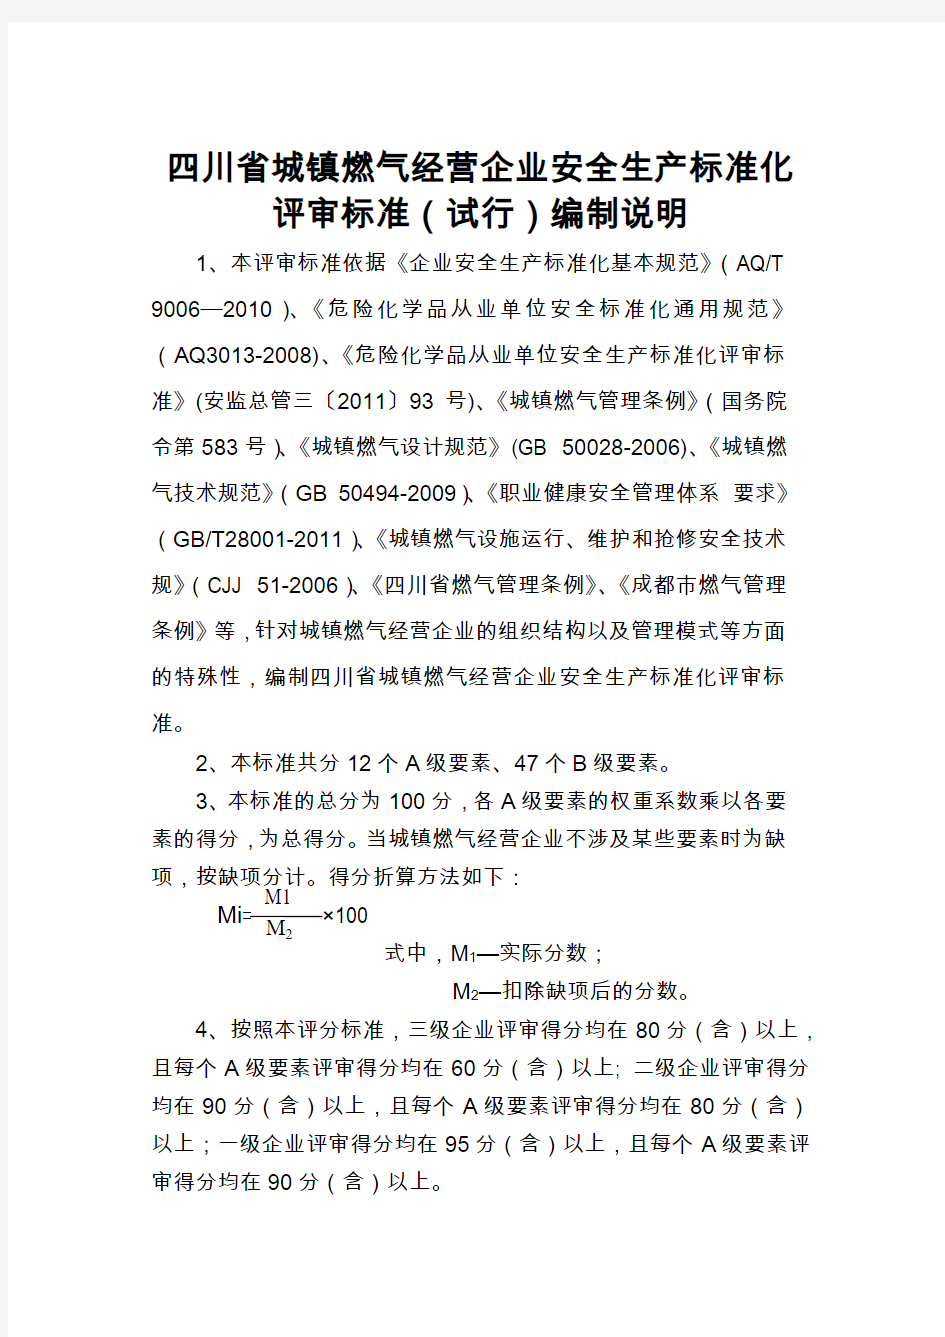 四川省城镇燃气经营企业安全生产标准化评审标准(试行)编制说明